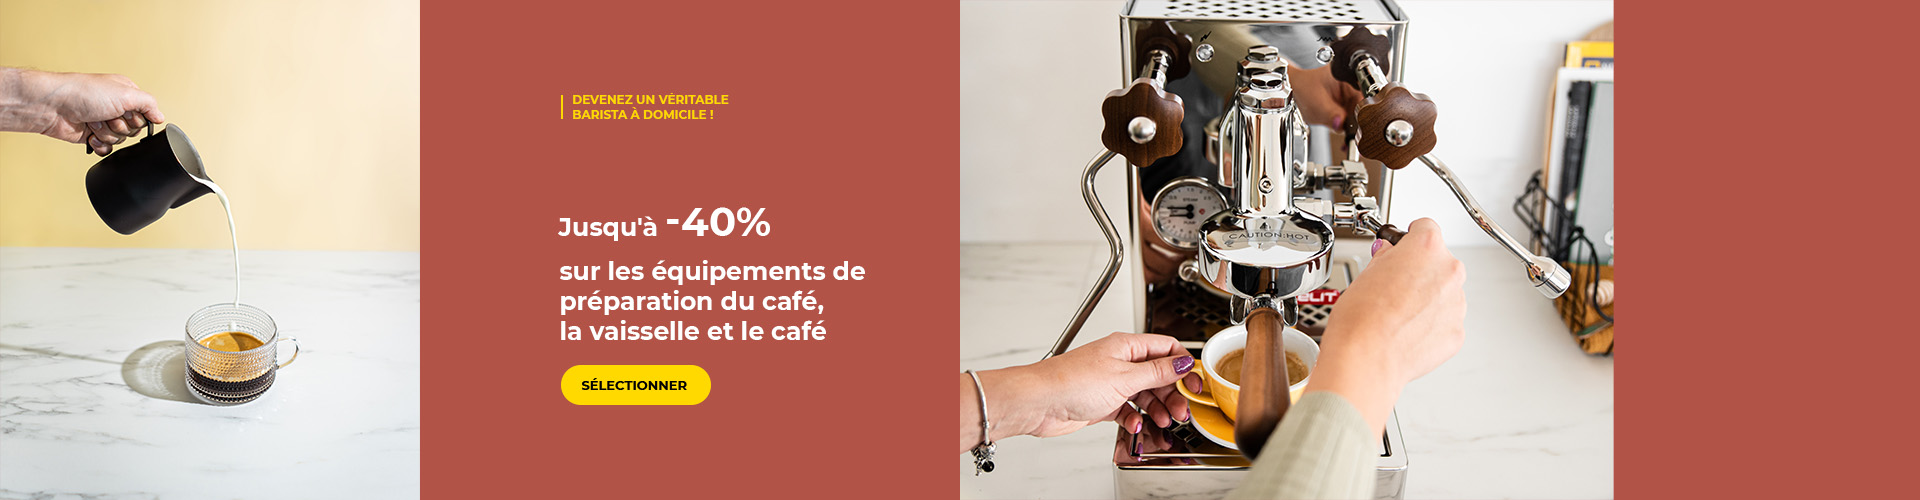 Jusqu'à -40% sur les équipements de préparation du café, la vaisselle et le café